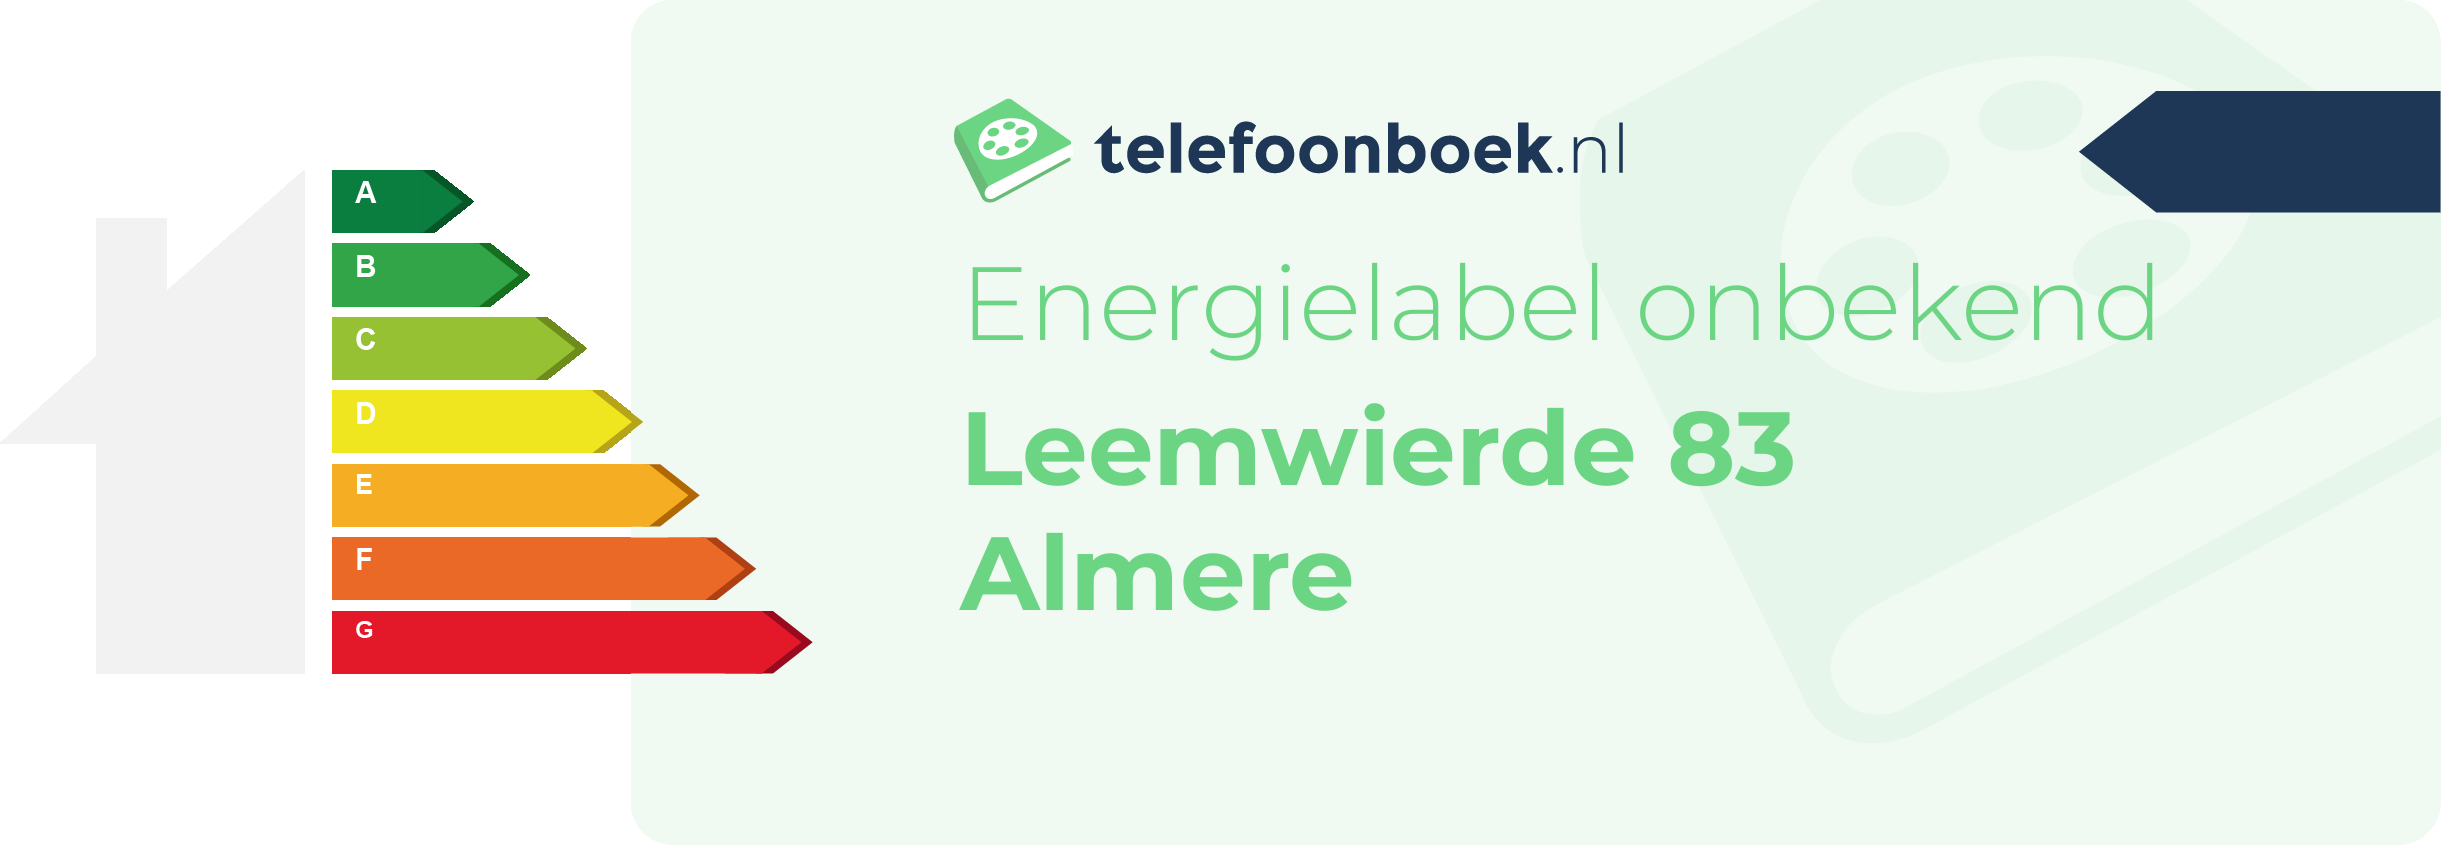 Energielabel Leemwierde 83 Almere